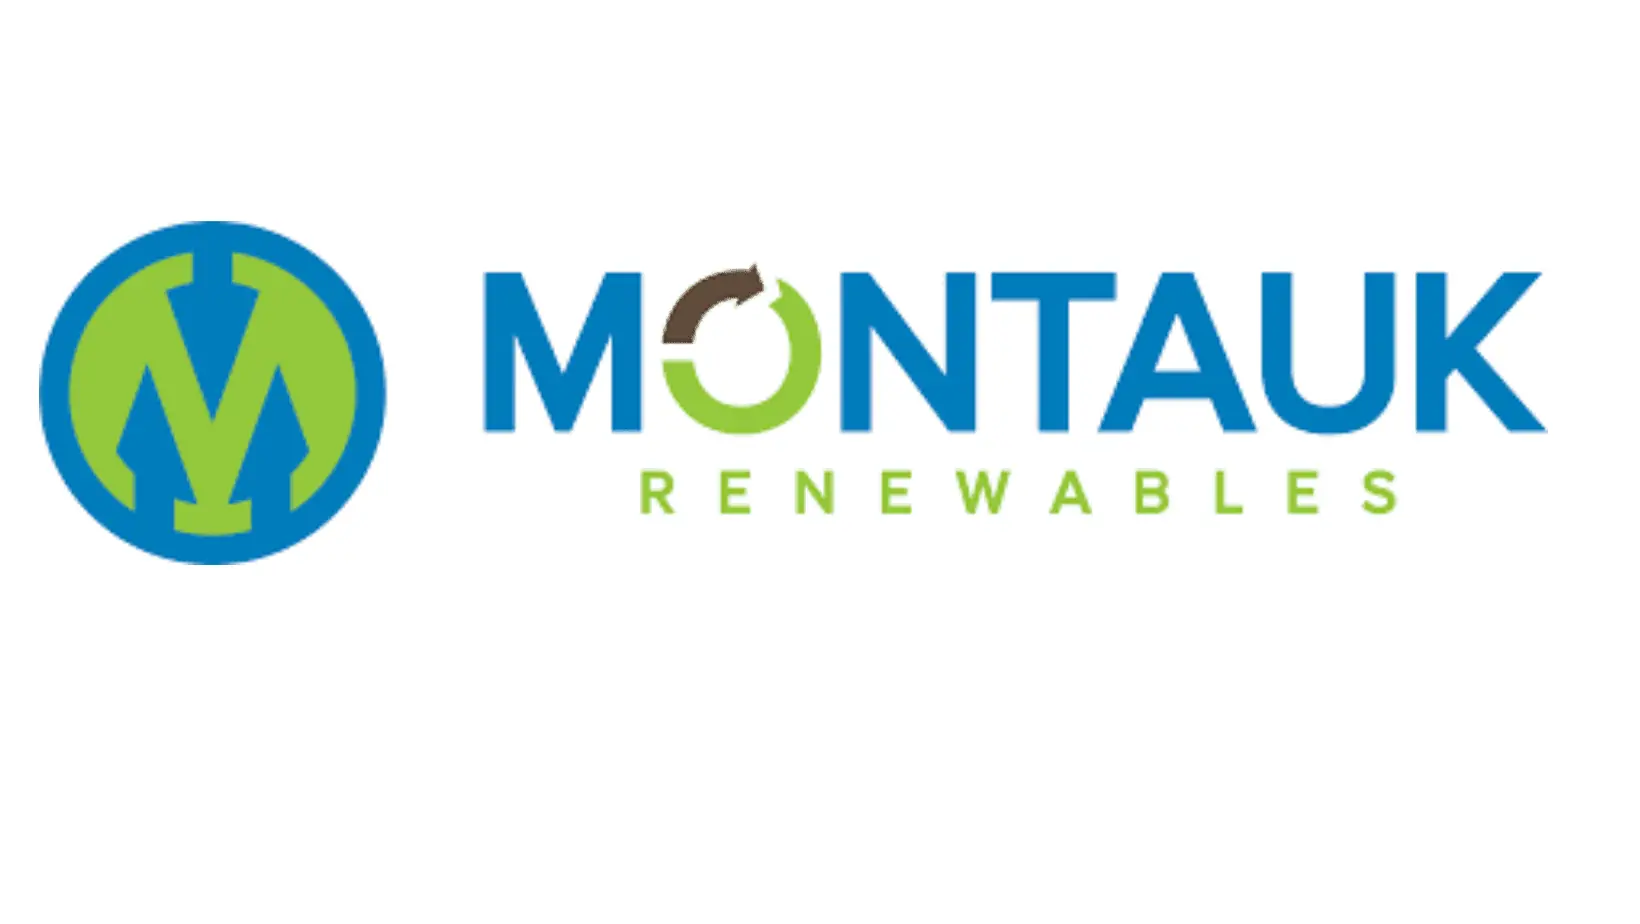 Montauk Renewables